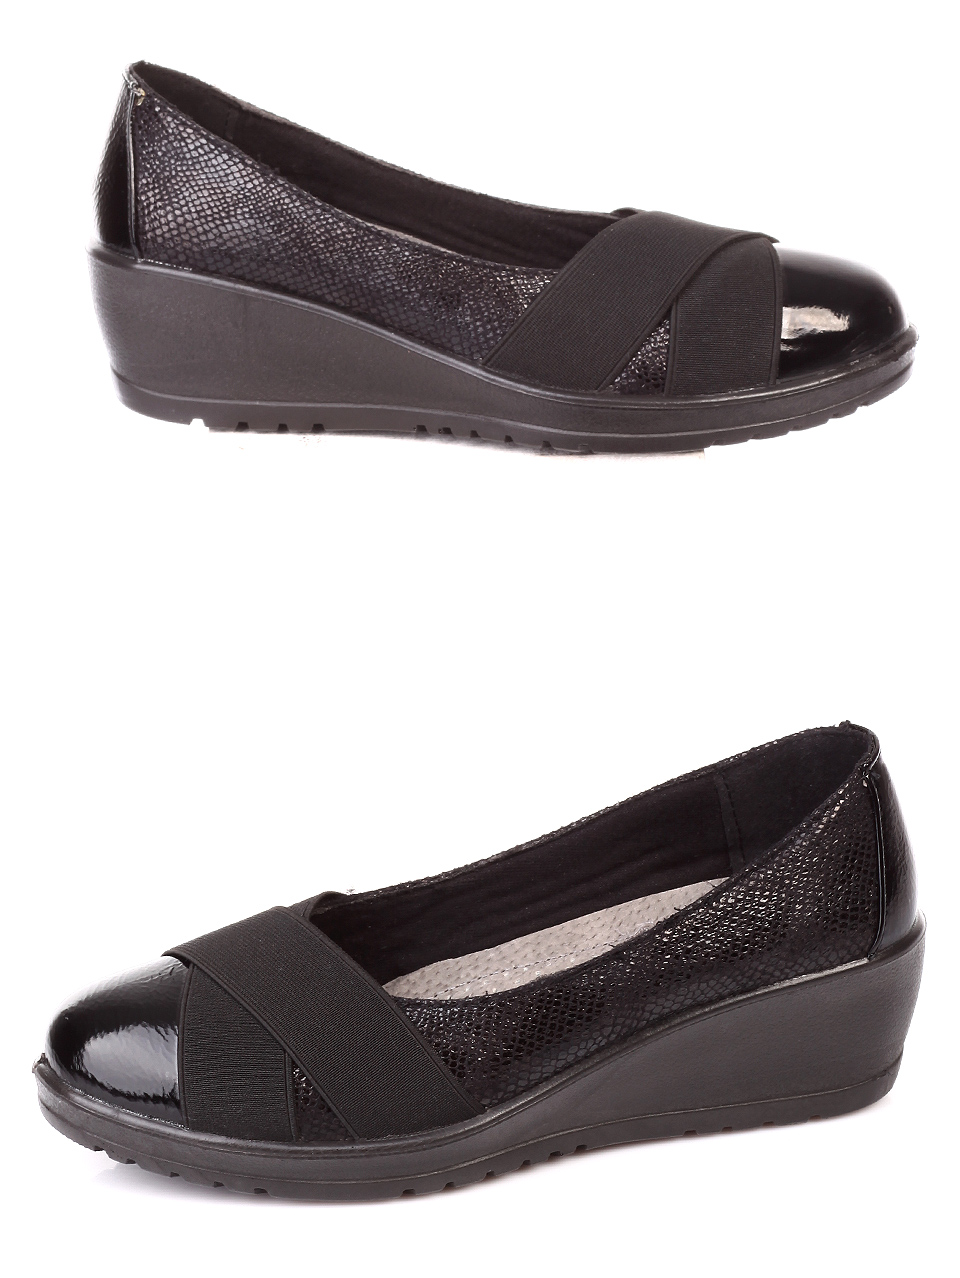 Ежедневни дамски обувки на платформа в черно 3C-19613 black